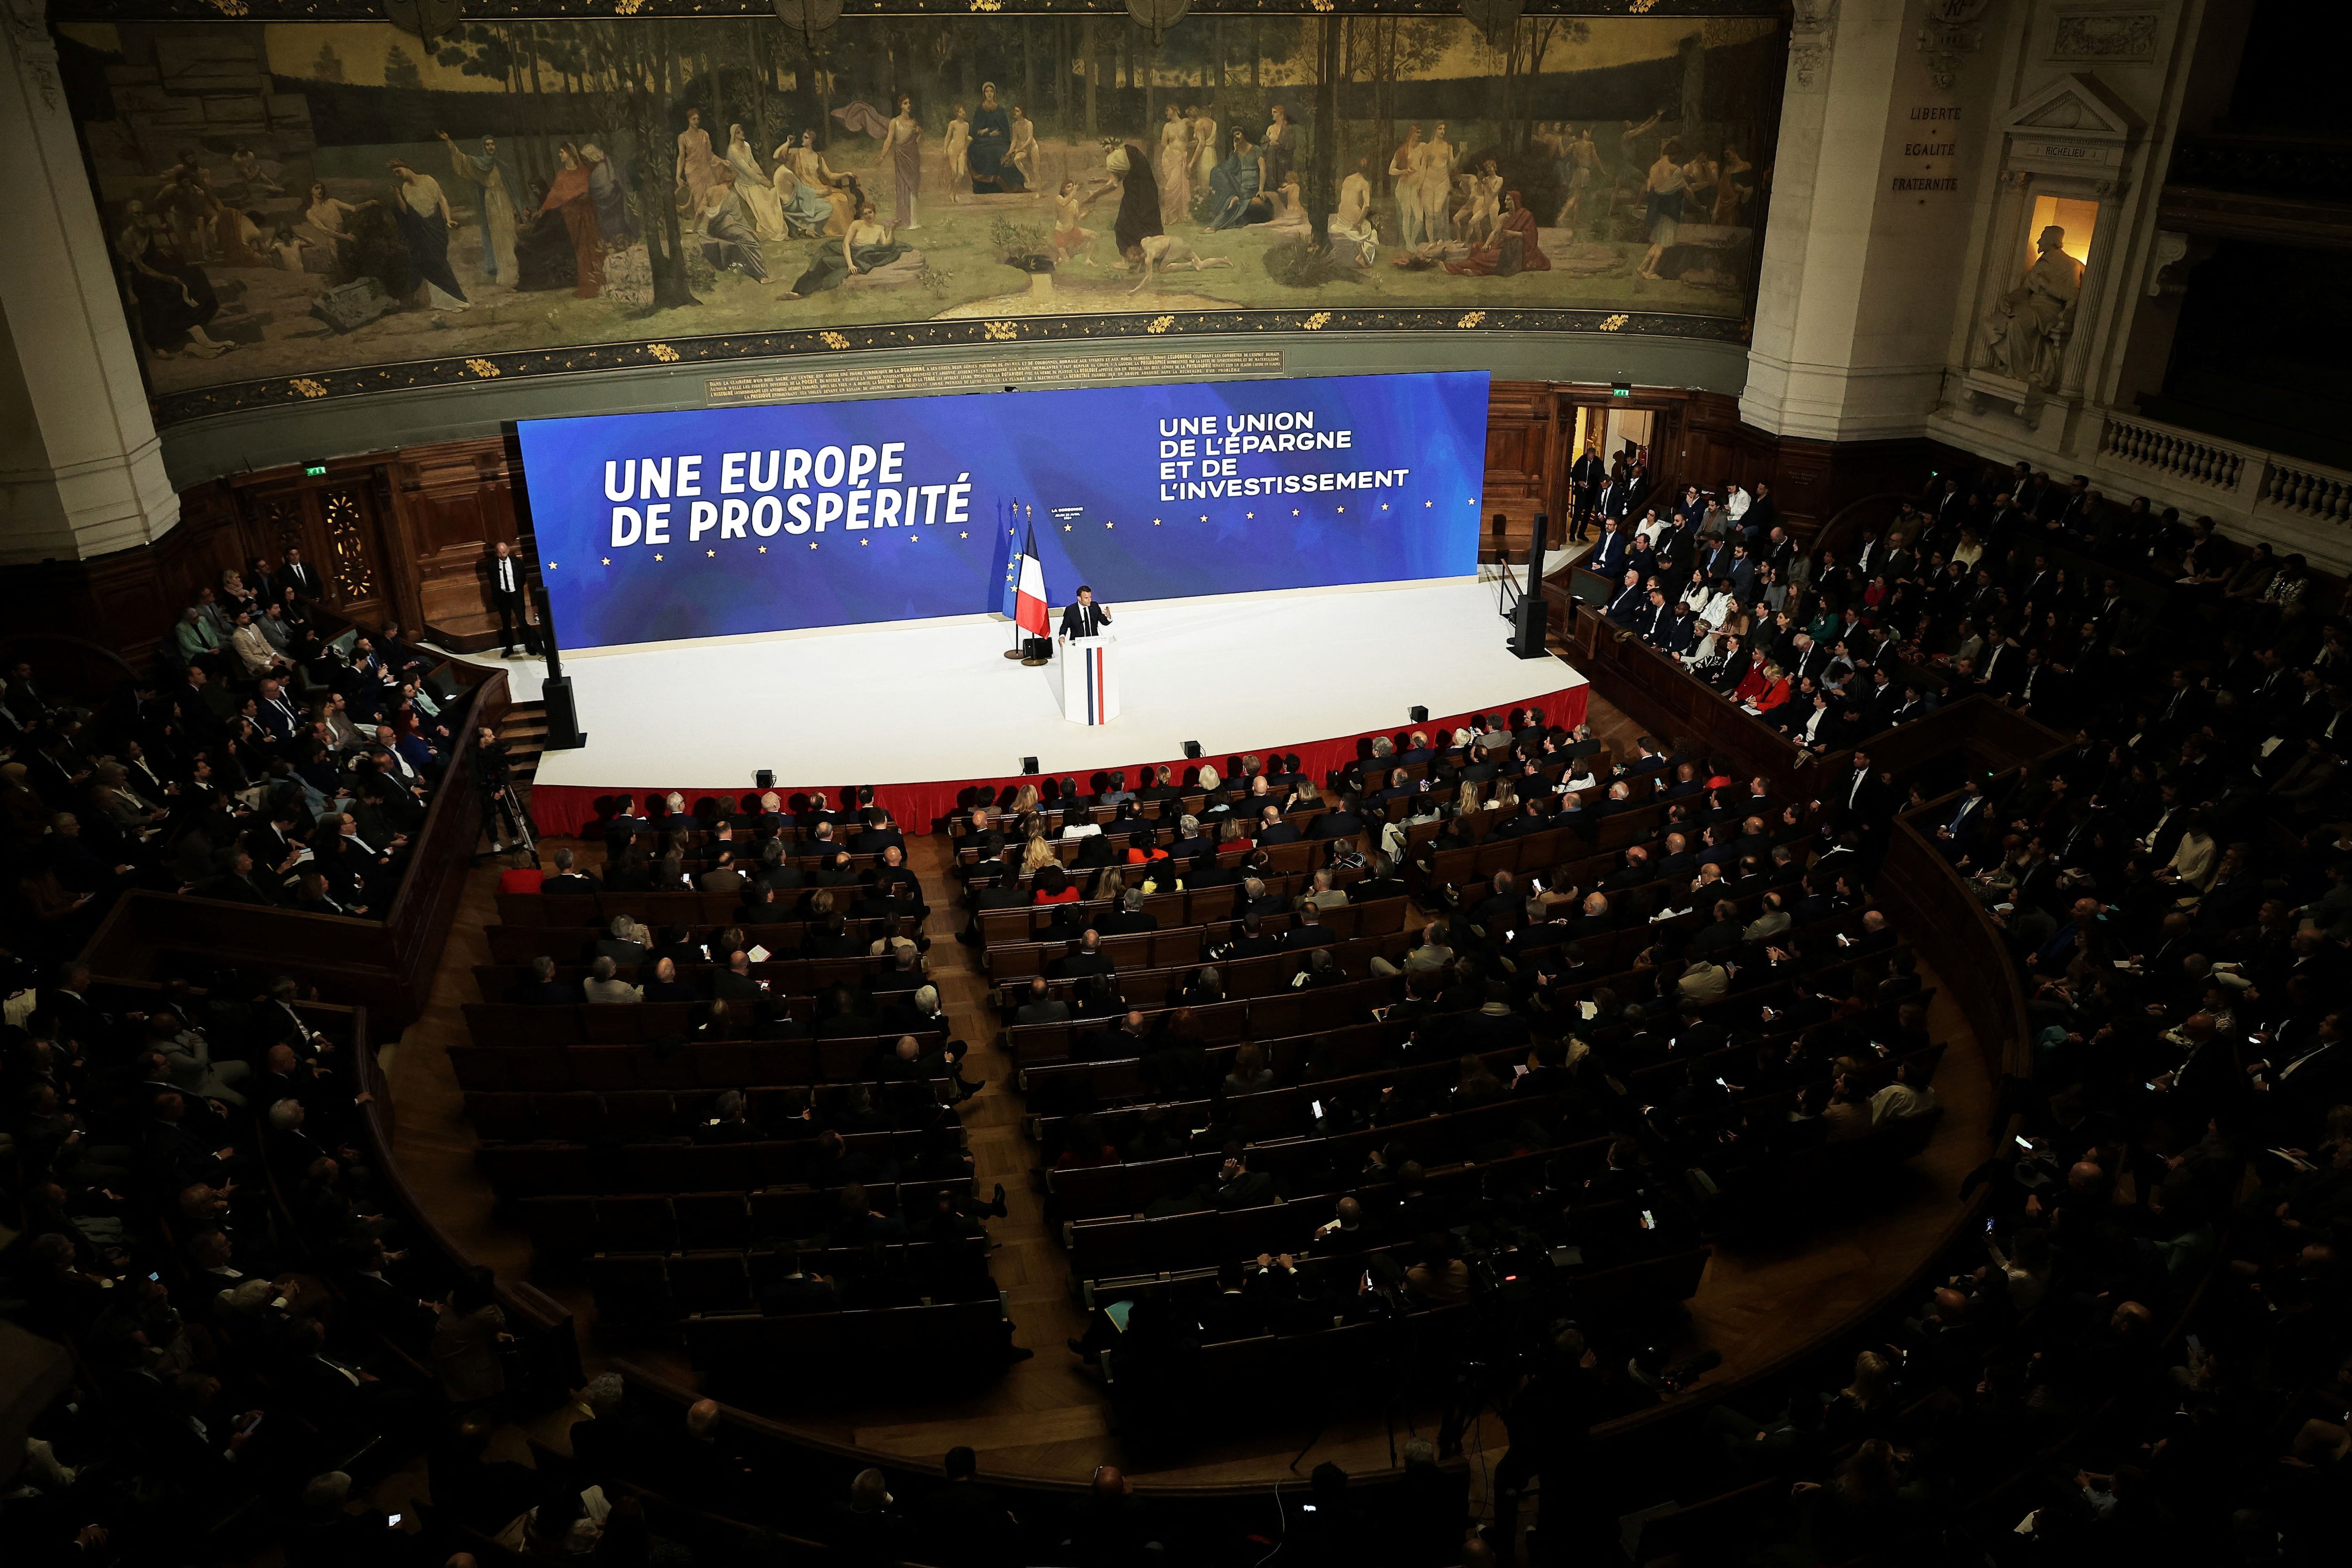 Macron habló durante casi dos horas en un escenario con lemas como "Una Europa próspera" y "Una unión de ahorro e inversión" (REUTERS)